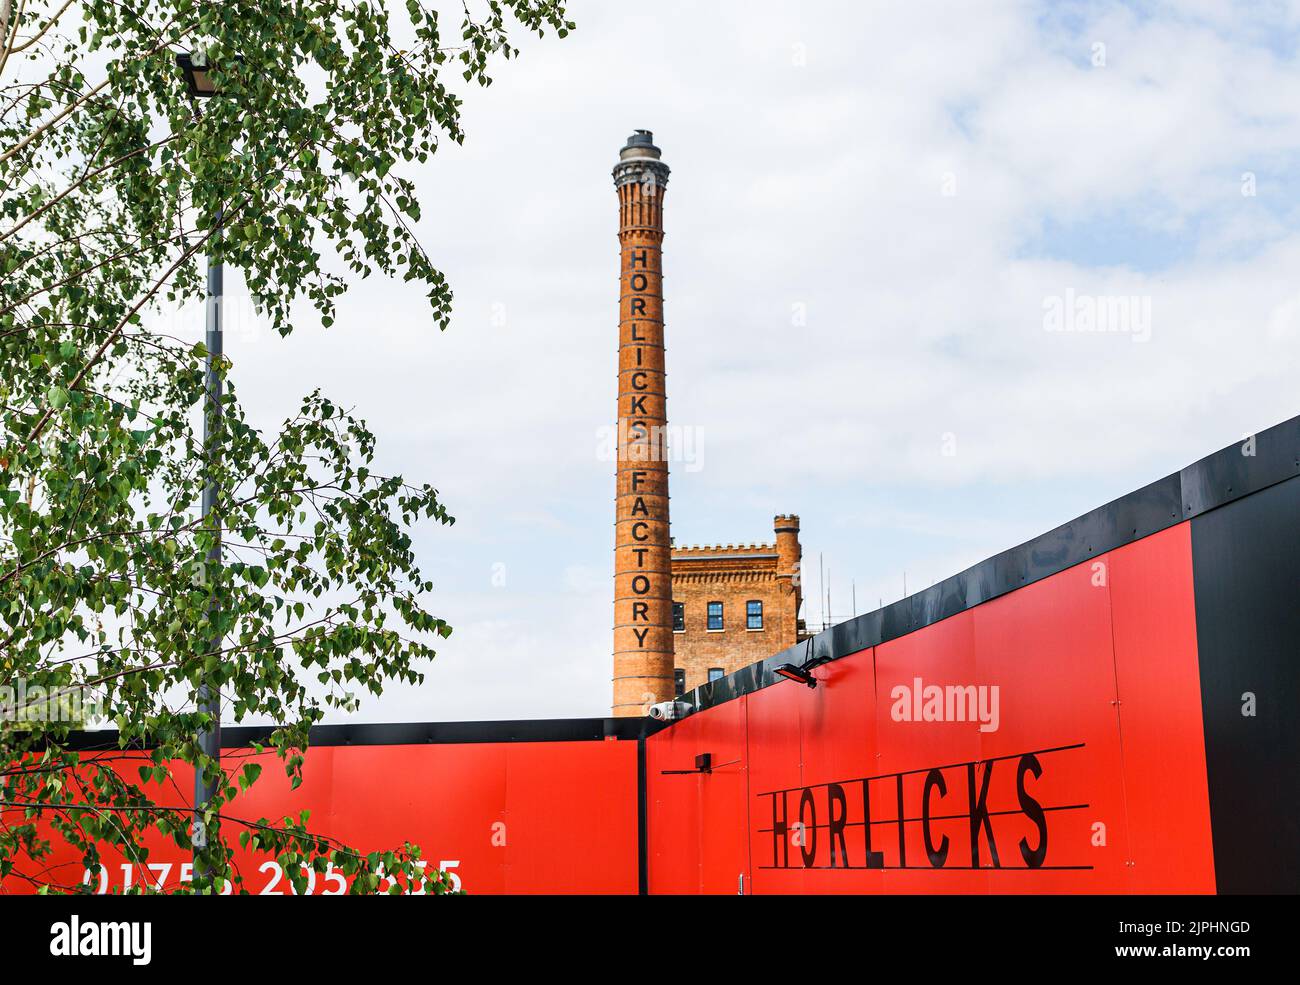 La icónica chimenea y la torre del reloj, puntos de referencia de la antigua fábrica de Horlicks, ahora renombrada como el Horlicks Quarter, Slough, Berkshire, Reino Unido Foto de stock